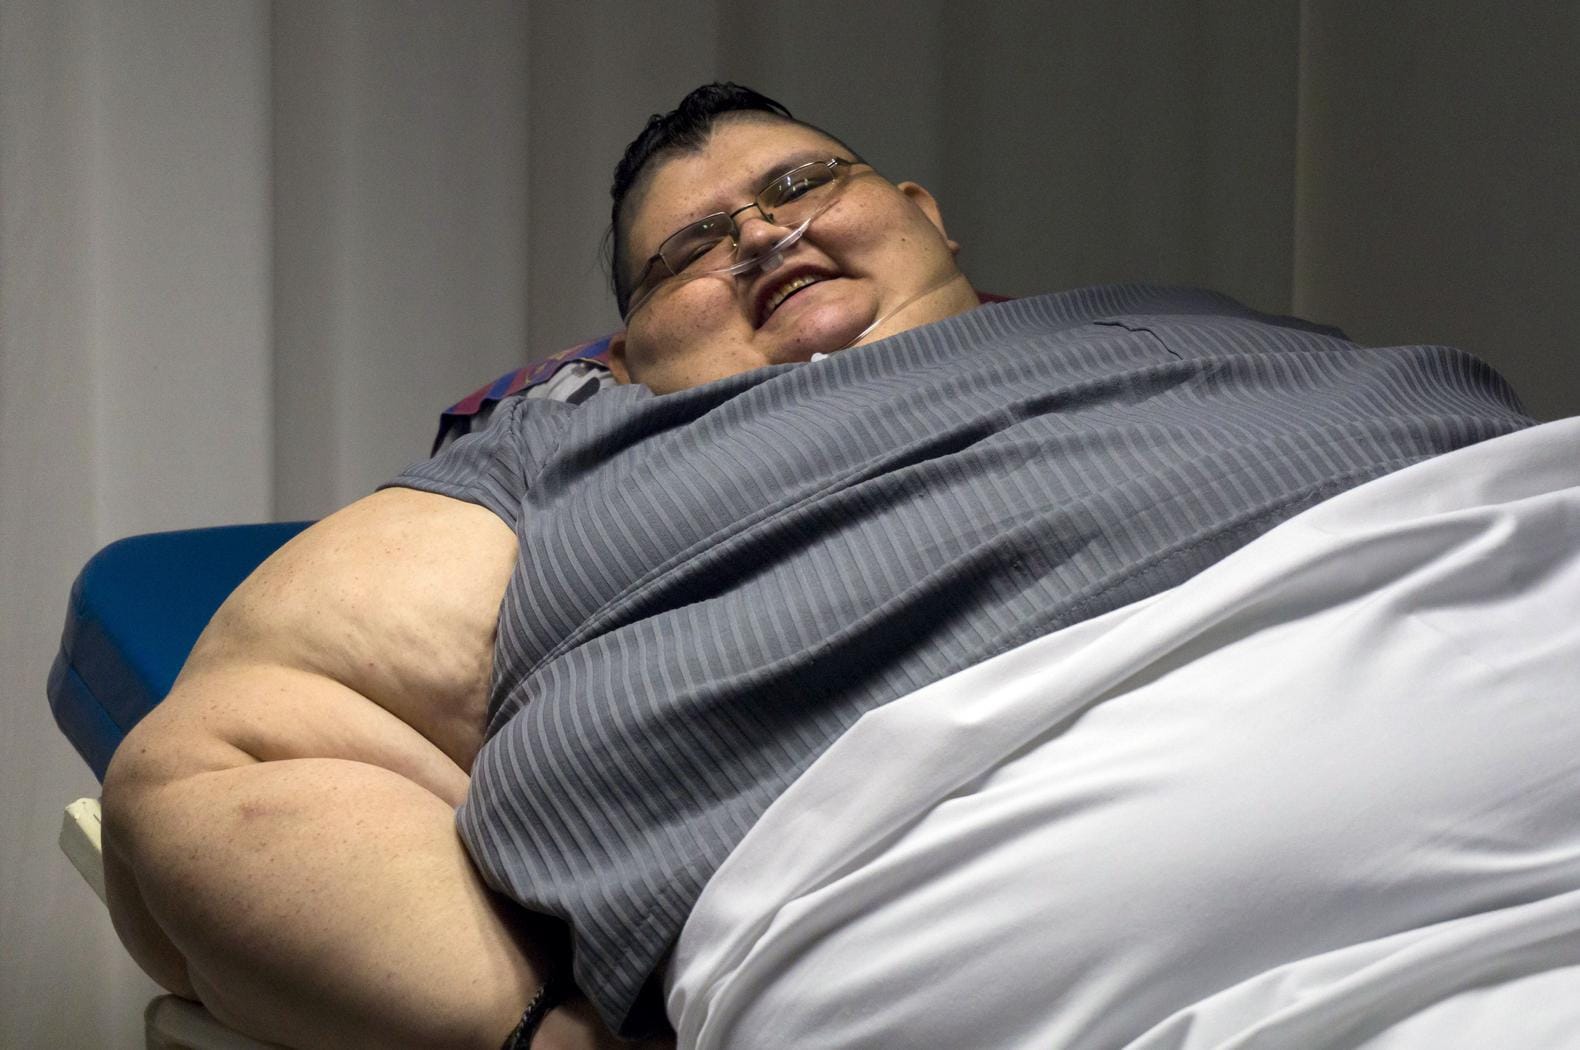 Zwaarste man ter wereld (600 kilo) wordt geopereerd